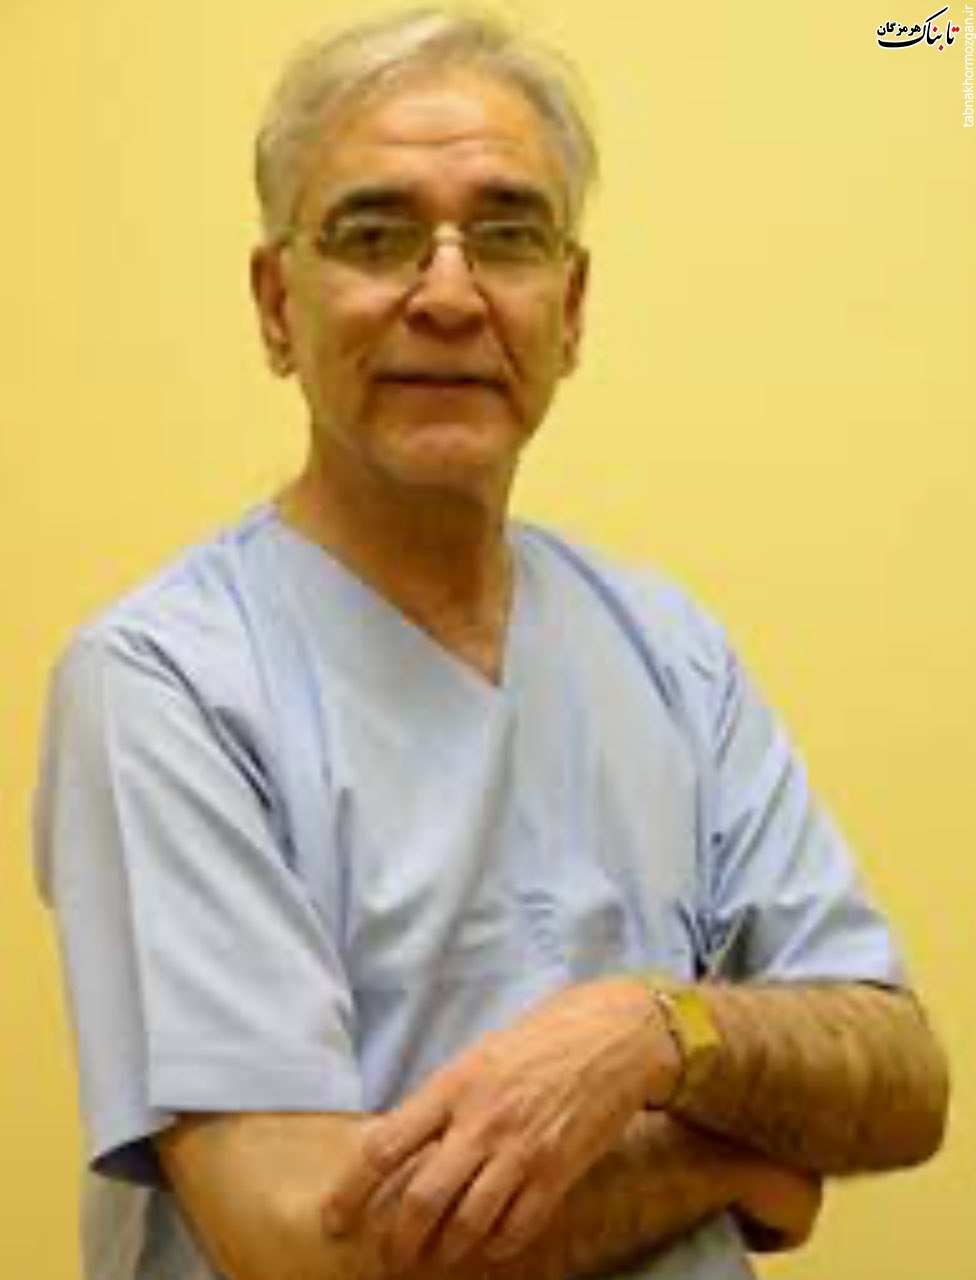 دکتر احمد خسروی خراشاد در اثر ابتلا به کرونا درگذشت